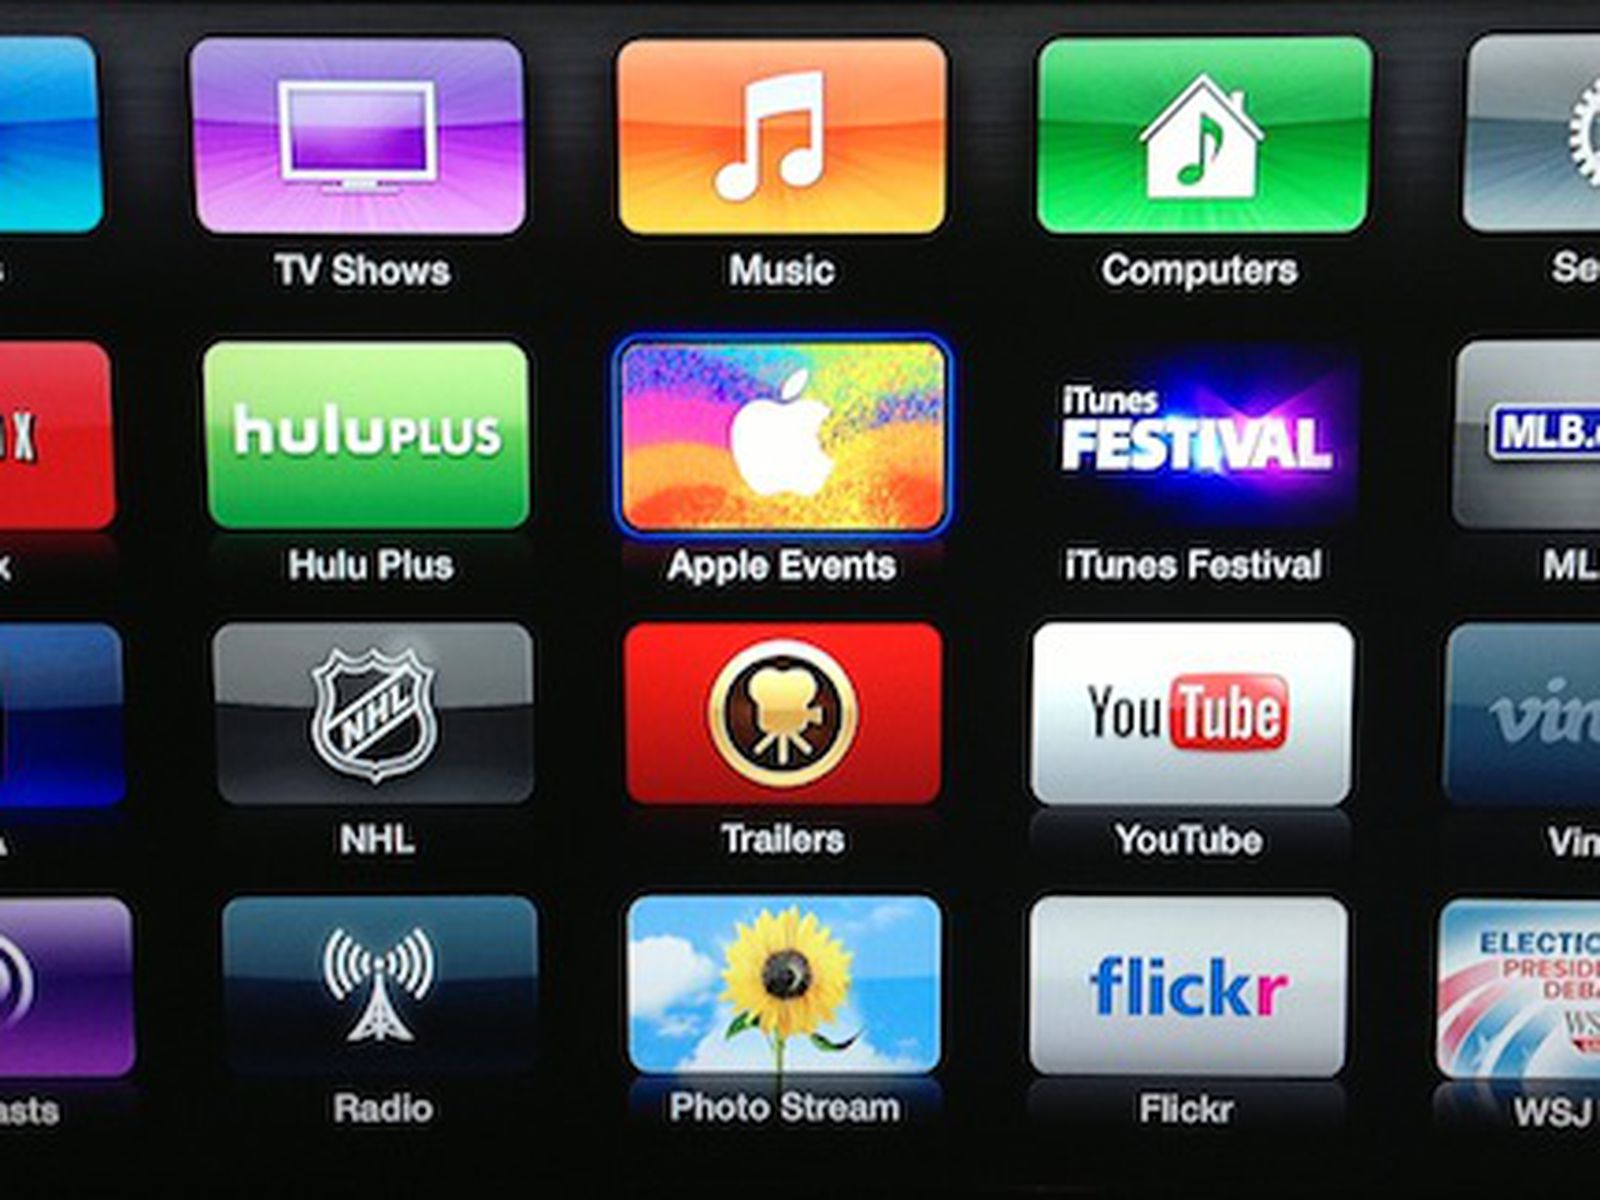 Apple to Stream Live Video 'iPad Mini' Media Apple TV - MacRumors